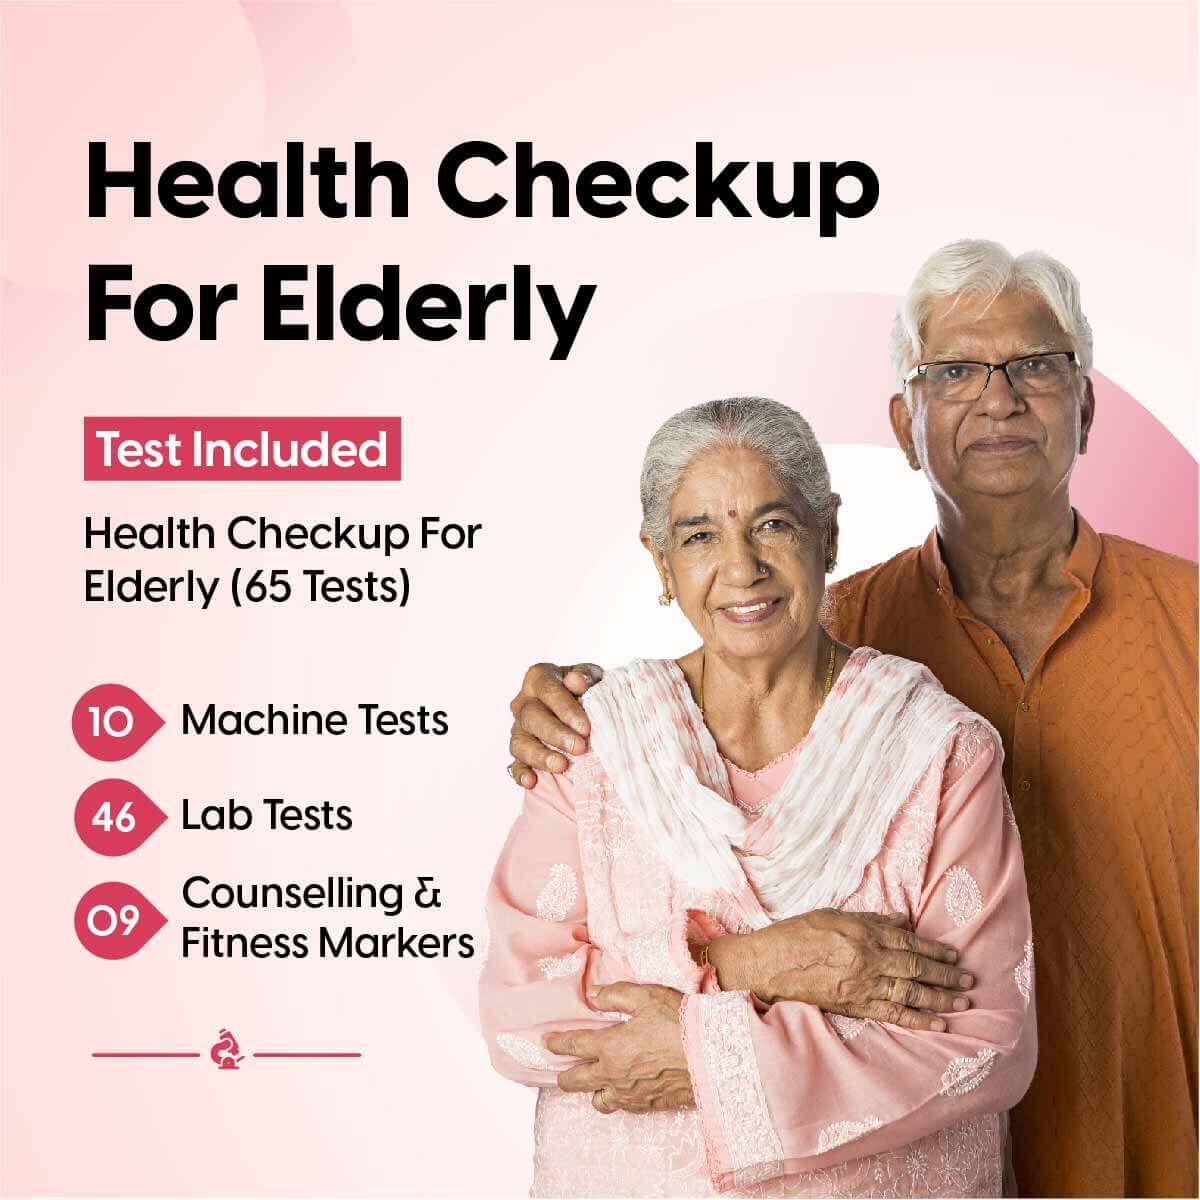 Health Checkup For Elderly